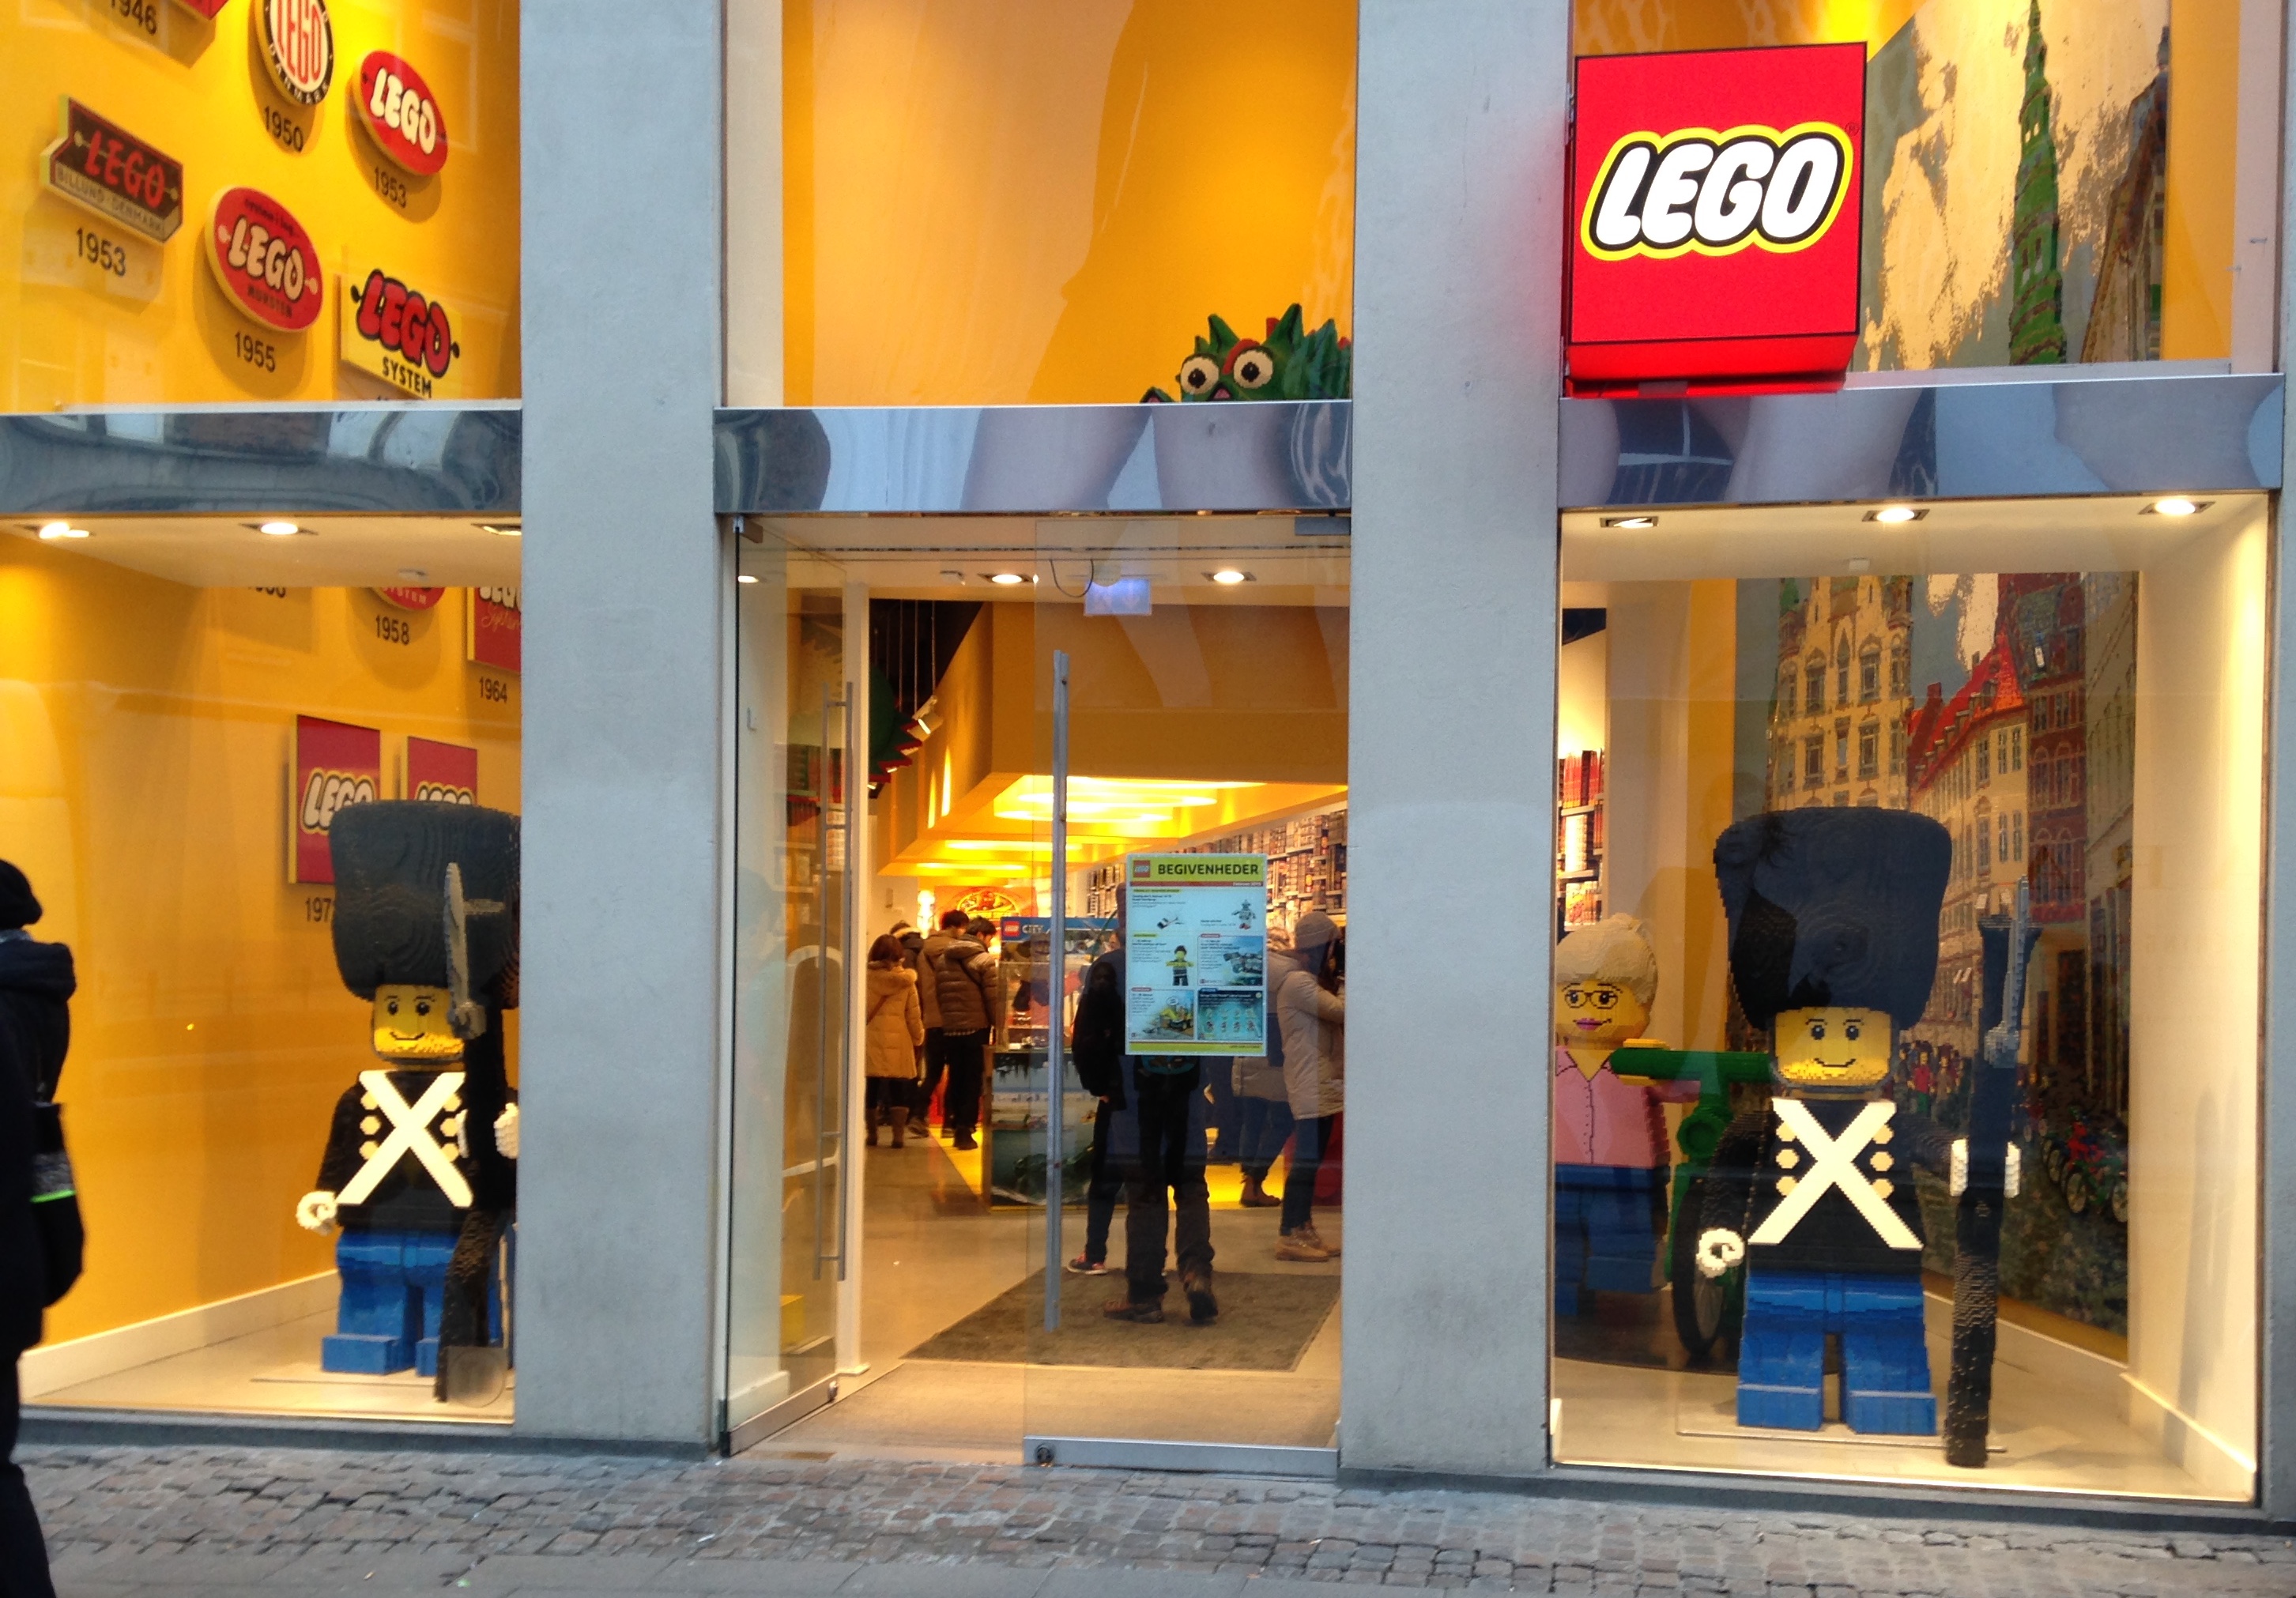 Une nouvelle campagne Lego pour lutter contre les stéréotypes - Stratégie  de marque > Marques 